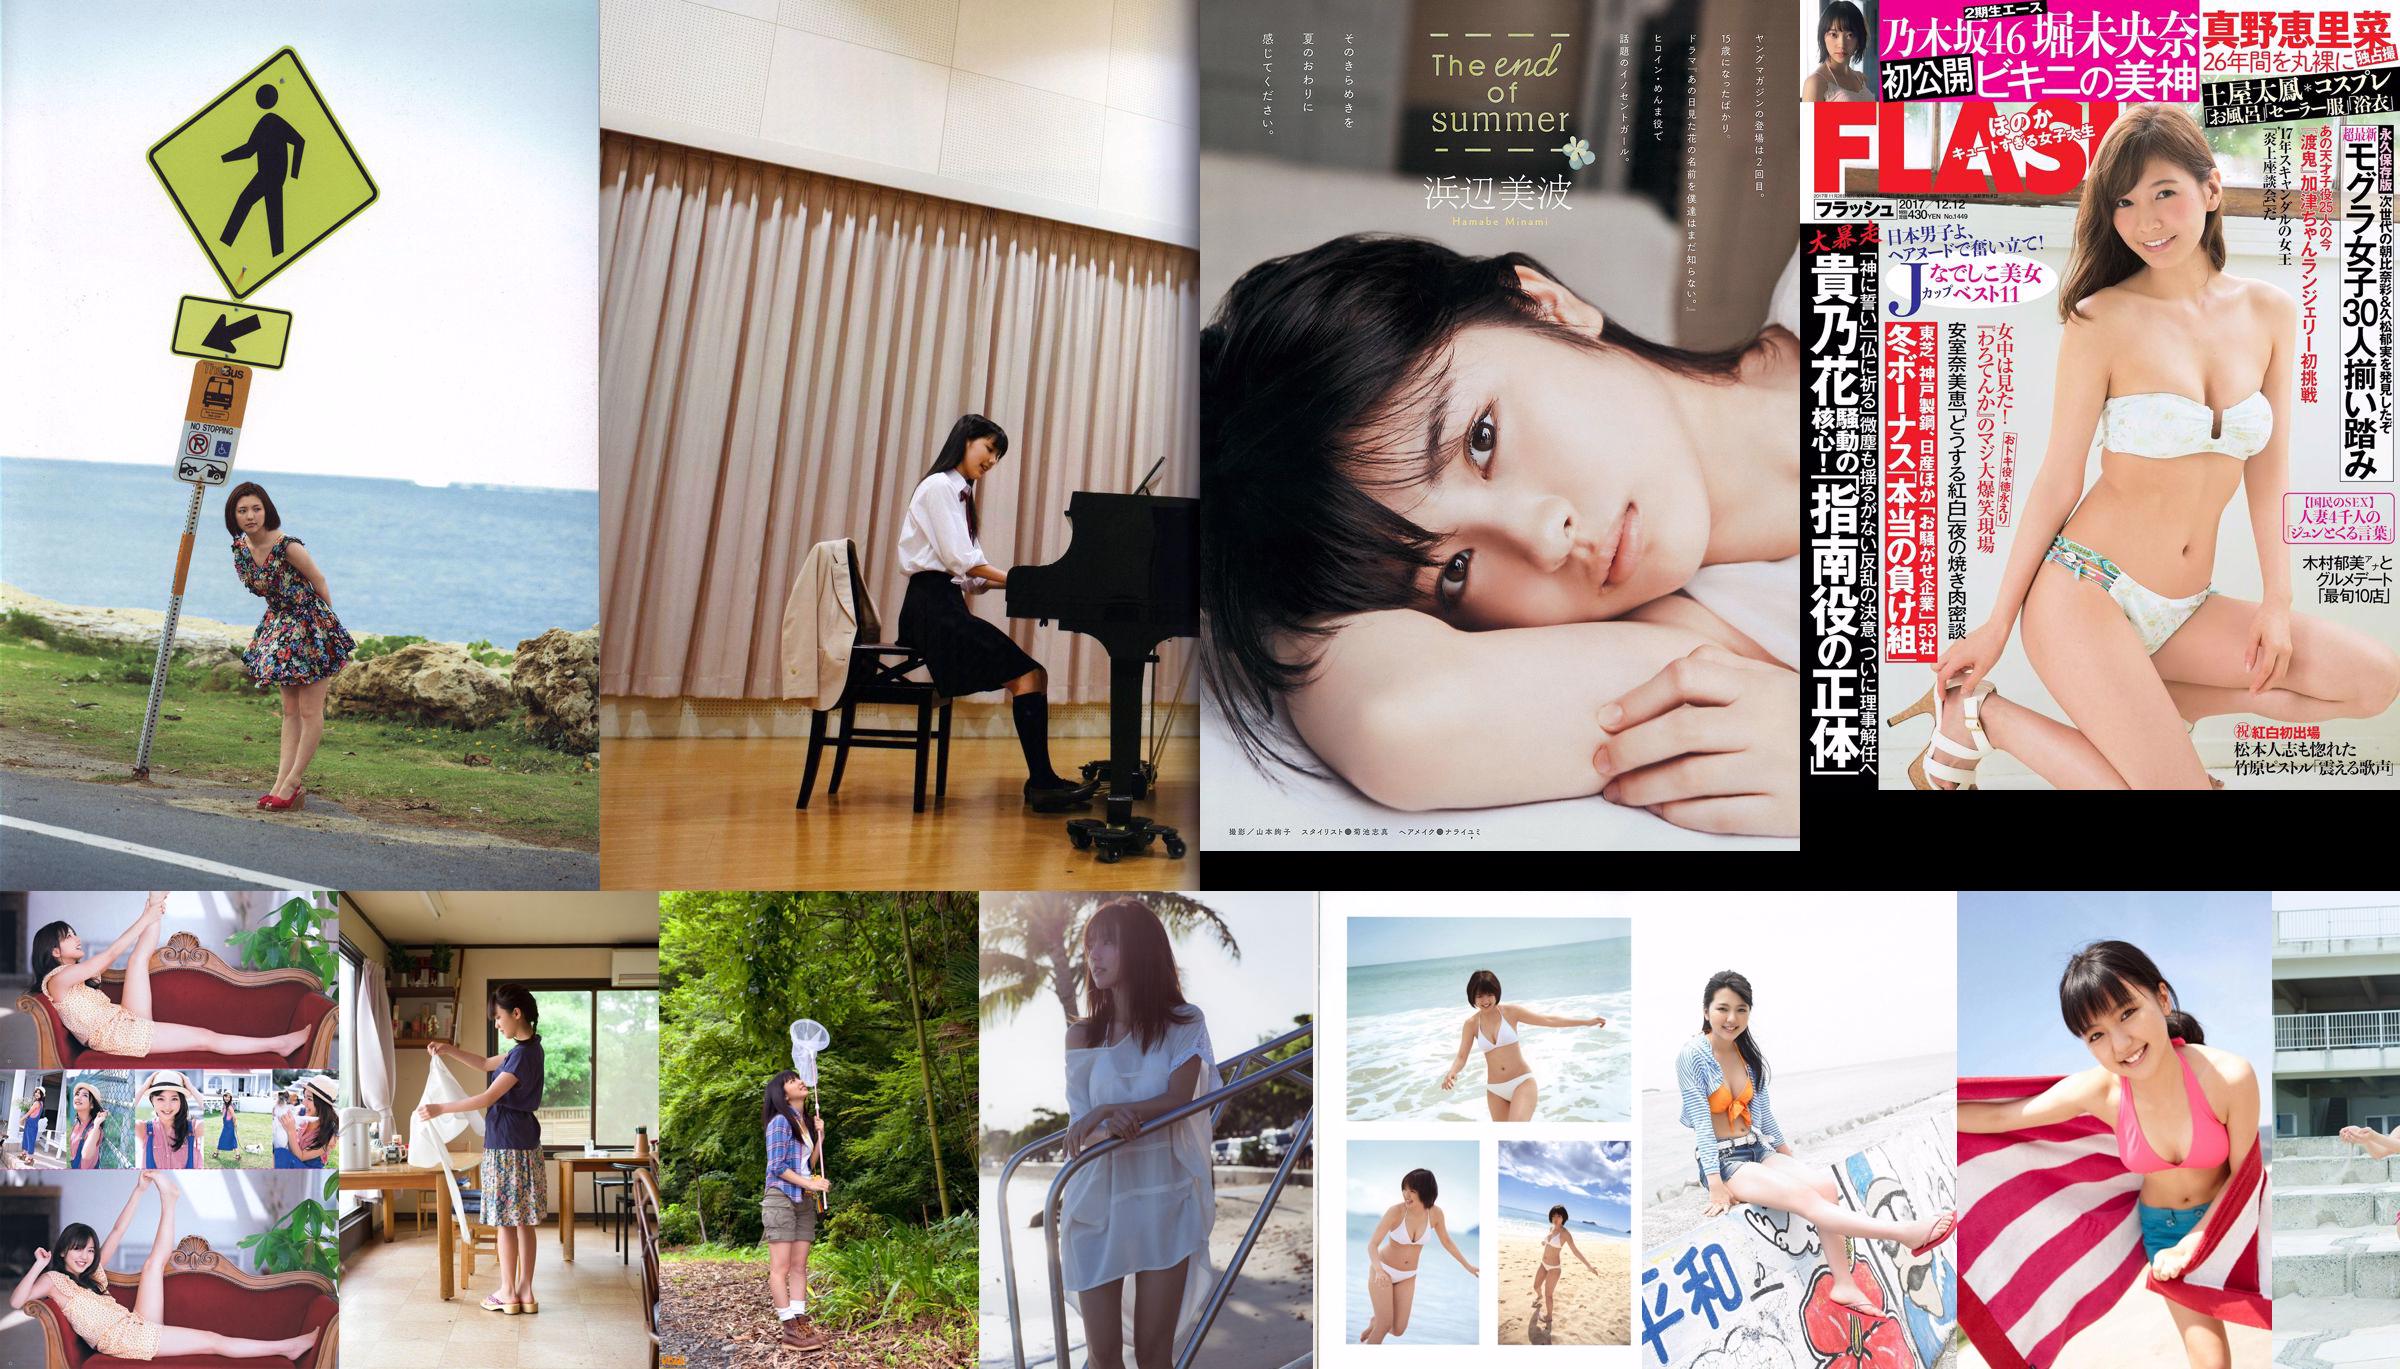 Mano Erina AKB48 Kojima Fujiko [Weekly Young Jump] 2013 No.01 Photo Magazine No.0772db Page 1